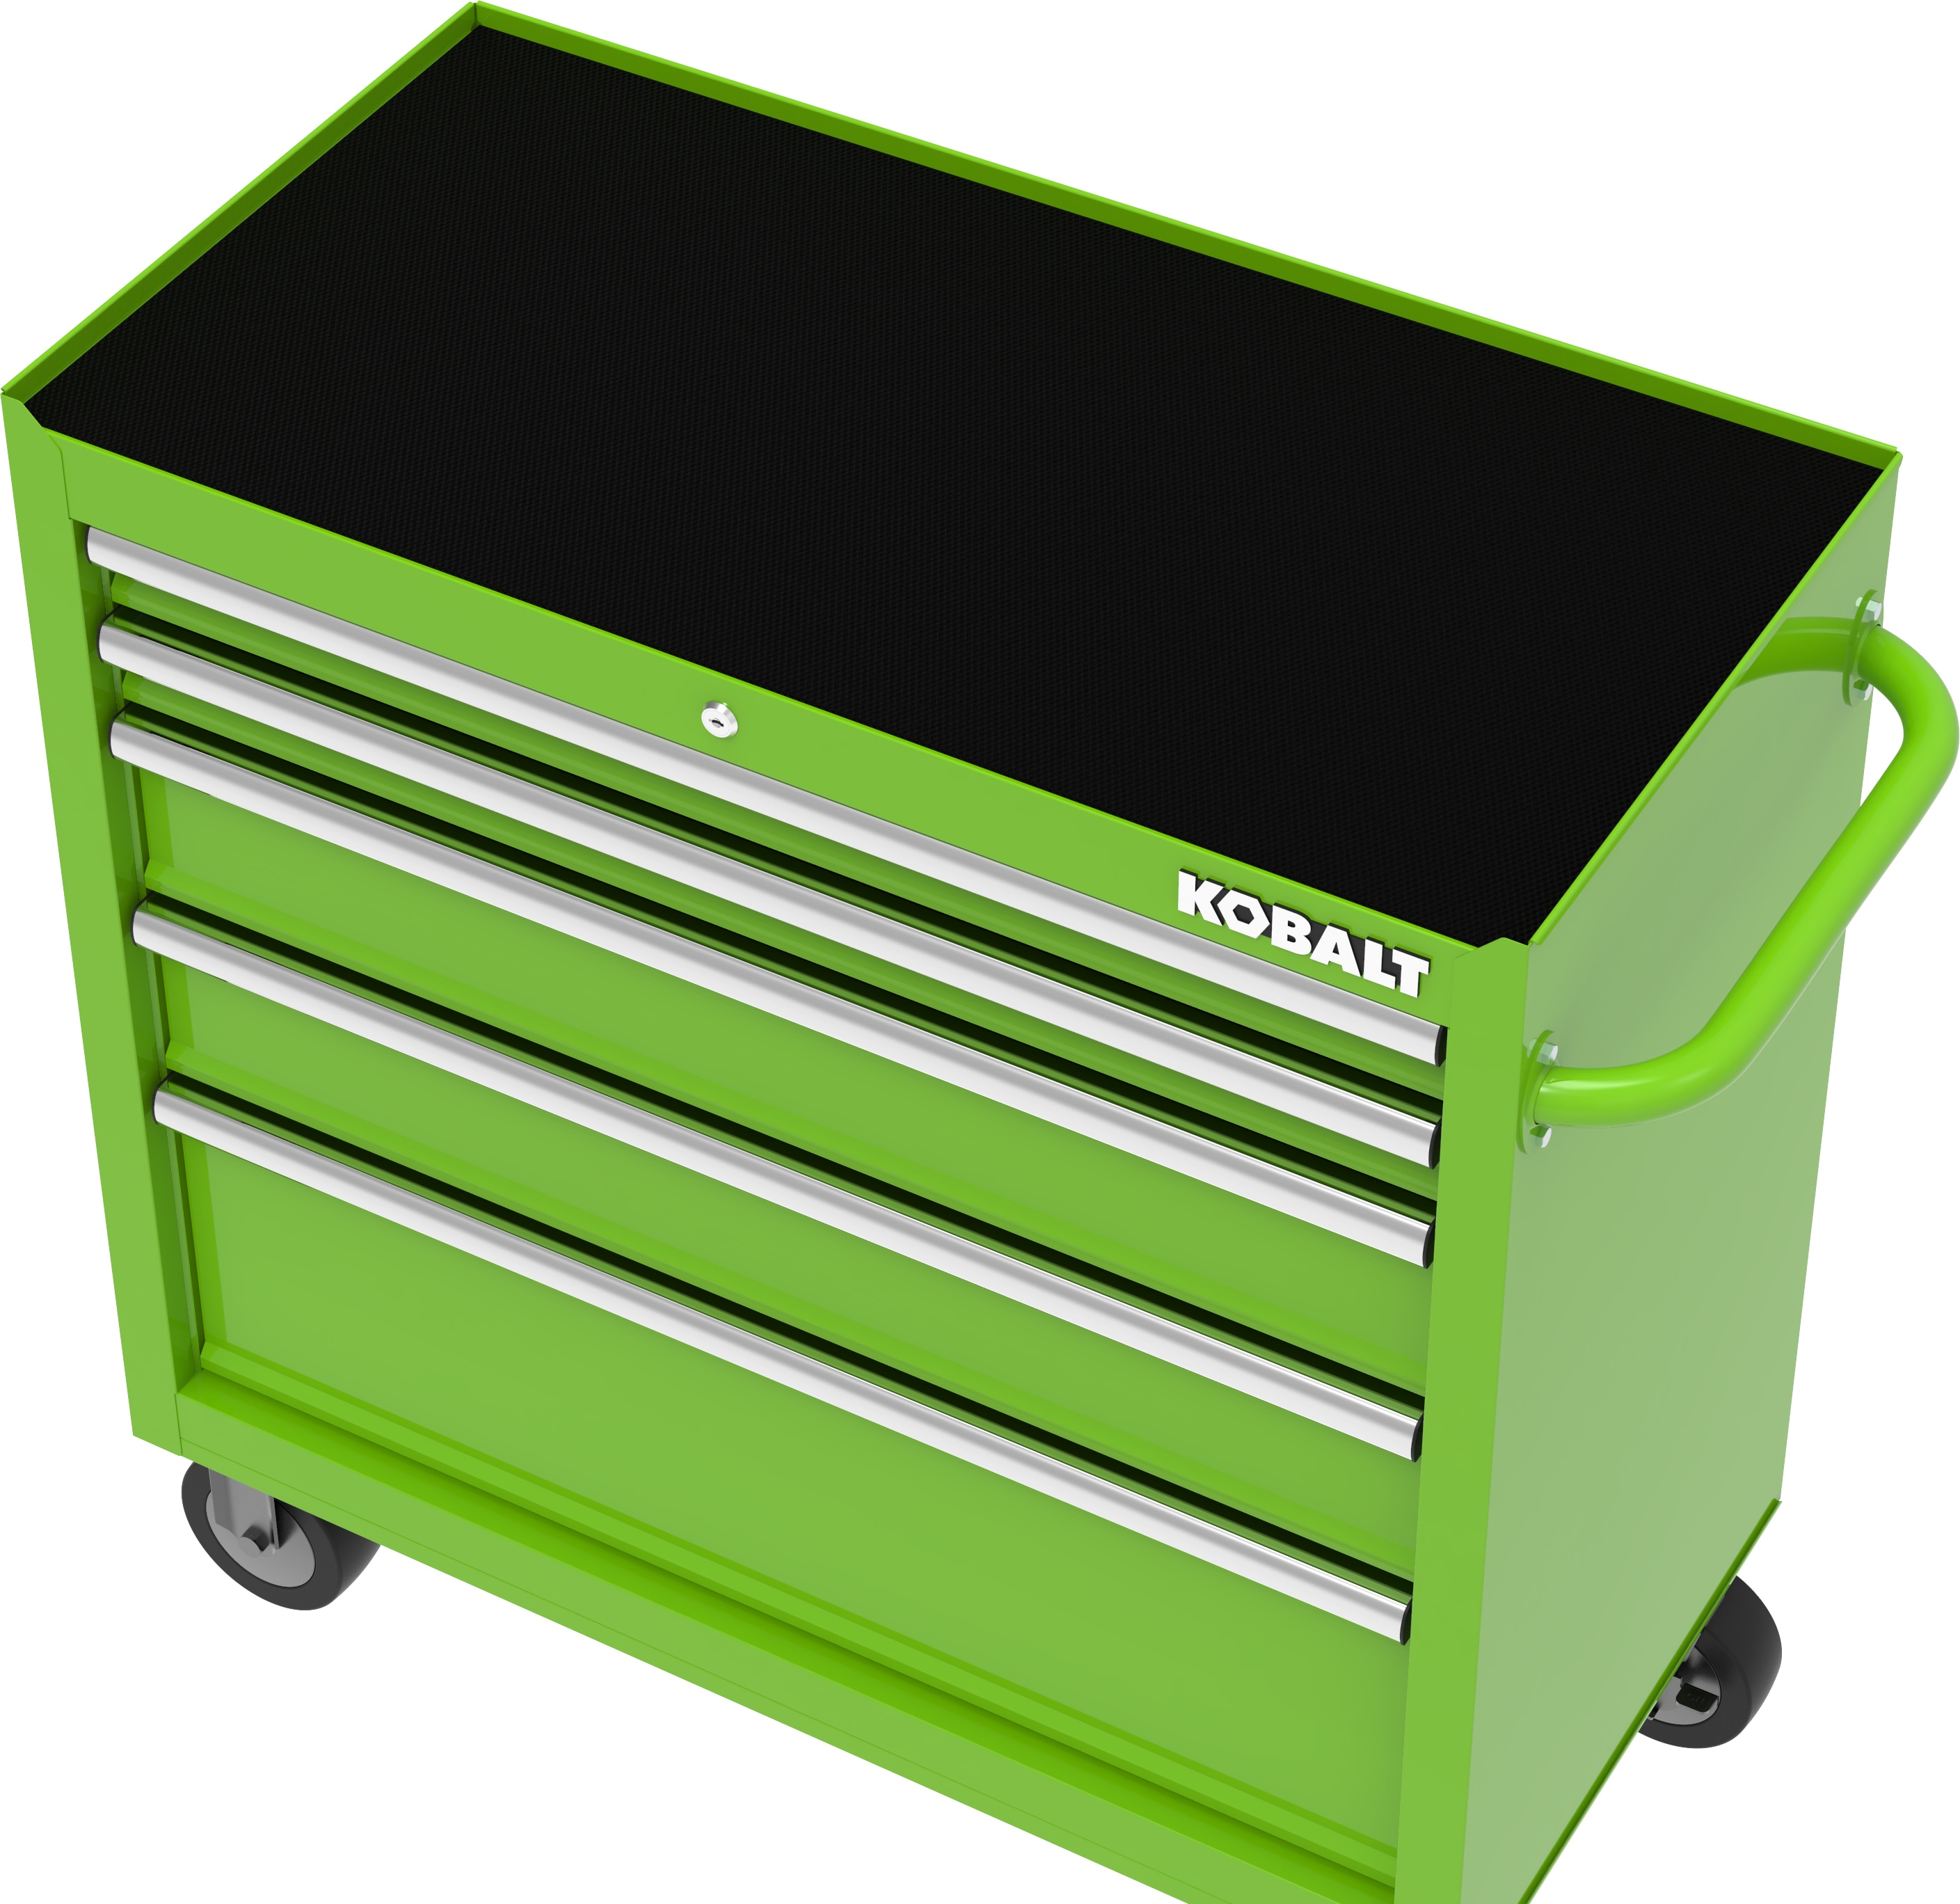 Kobalt 37.83-in W x 18.15-in H 5-Drawer Steel Rolling Tool Cabinet (Green)